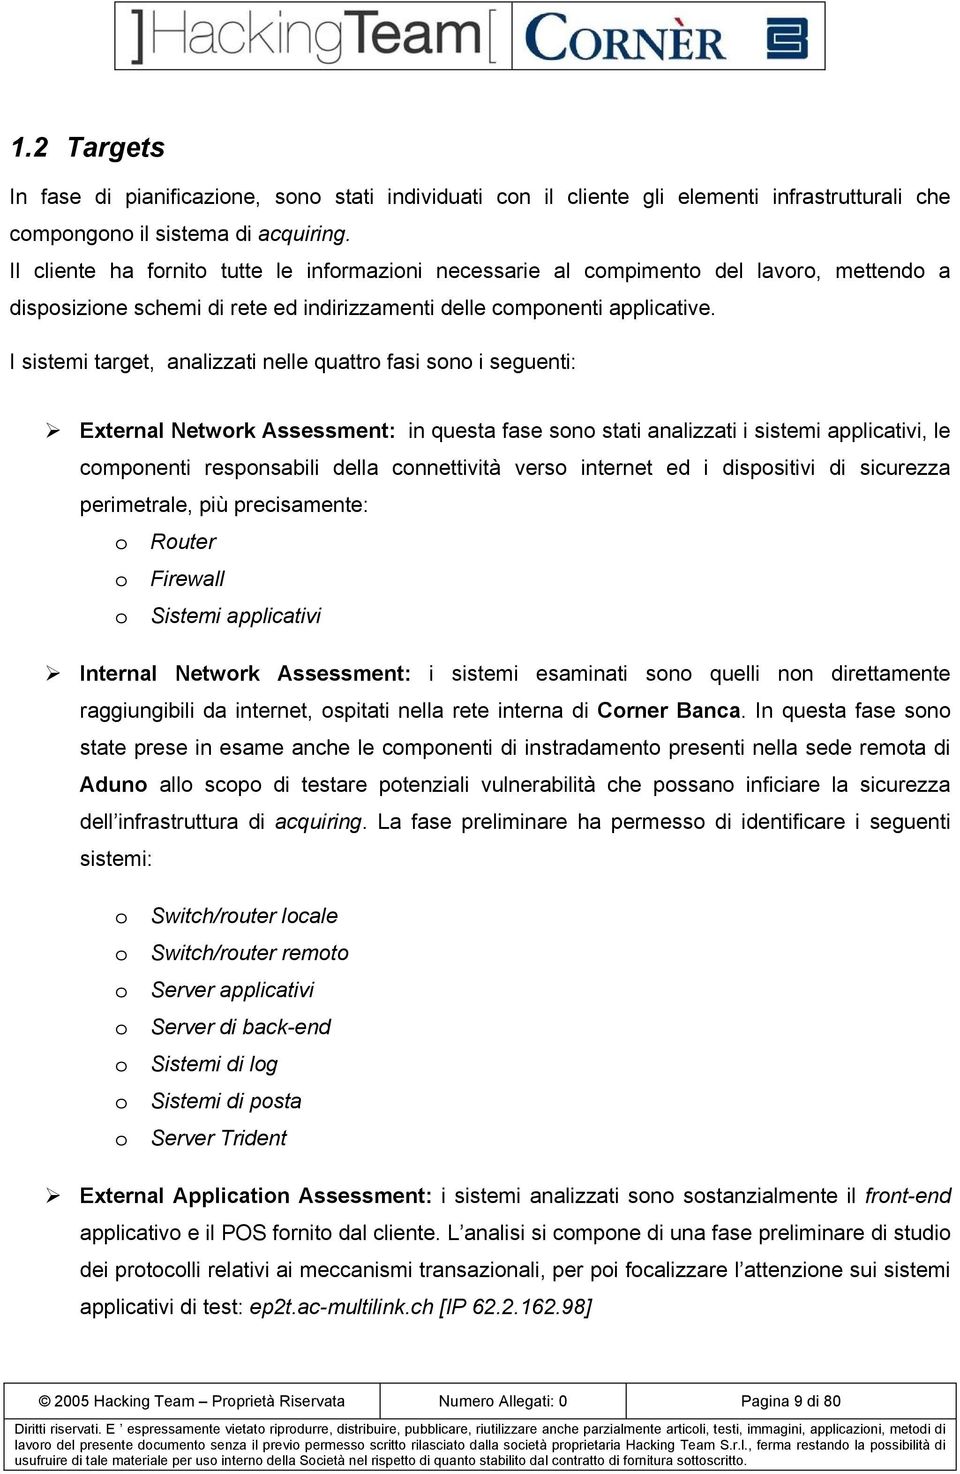 I sistemi target, analizzati nelle quattro fasi sono i seguenti: External Network Assessment: in questa fase sono stati analizzati i sistemi applicativi, le componenti responsabili della connettività